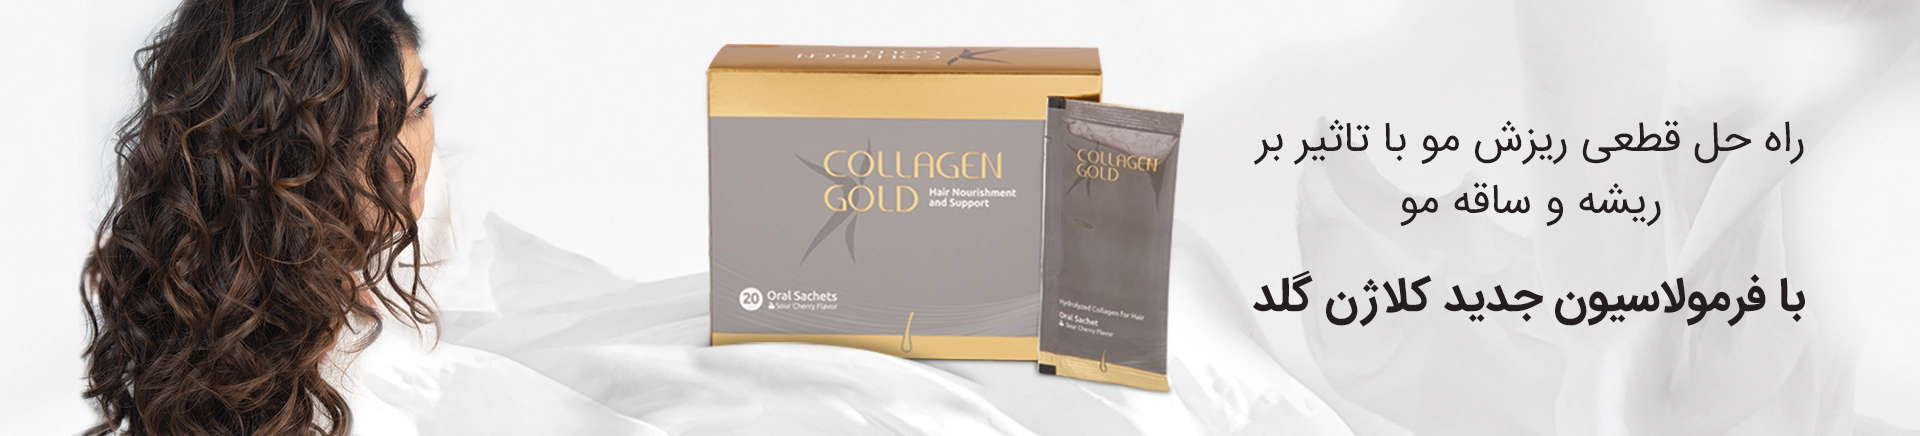 Collagen-gold